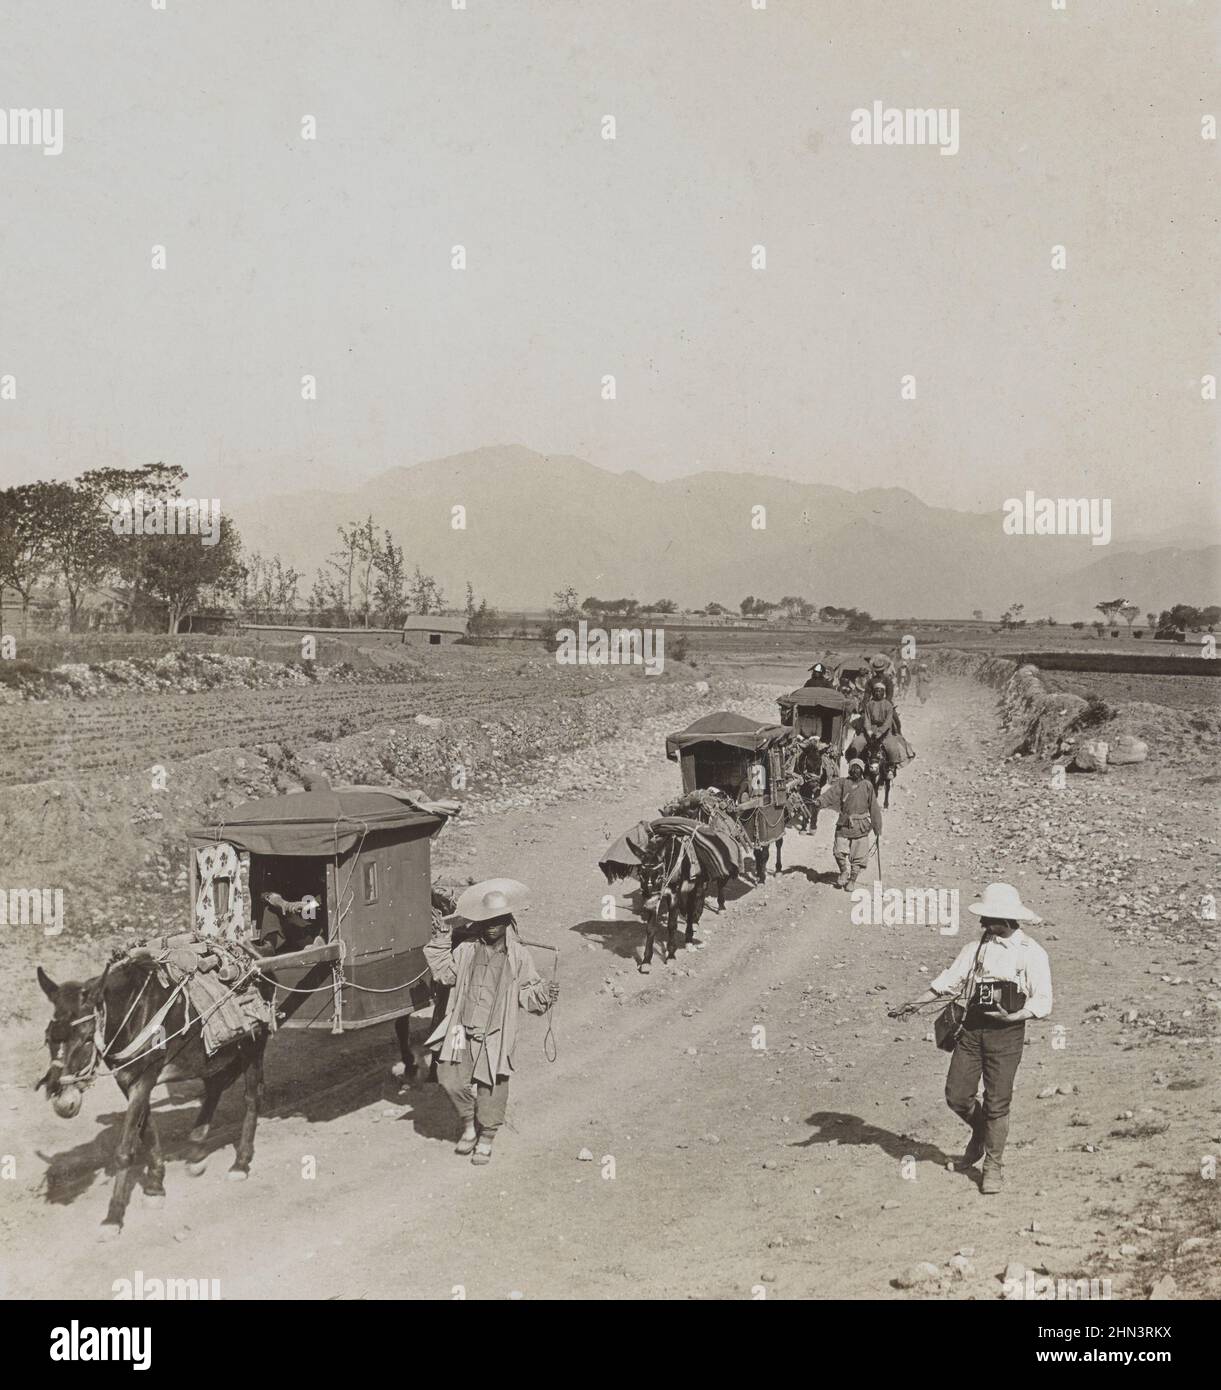 Photo vintage des hommes chinois en robe traditionnelle et charrettes à ânes sur le chemin des tombeaux de la dynastie Ming. Chine du Nord. Novembre 1902 Banque D'Images